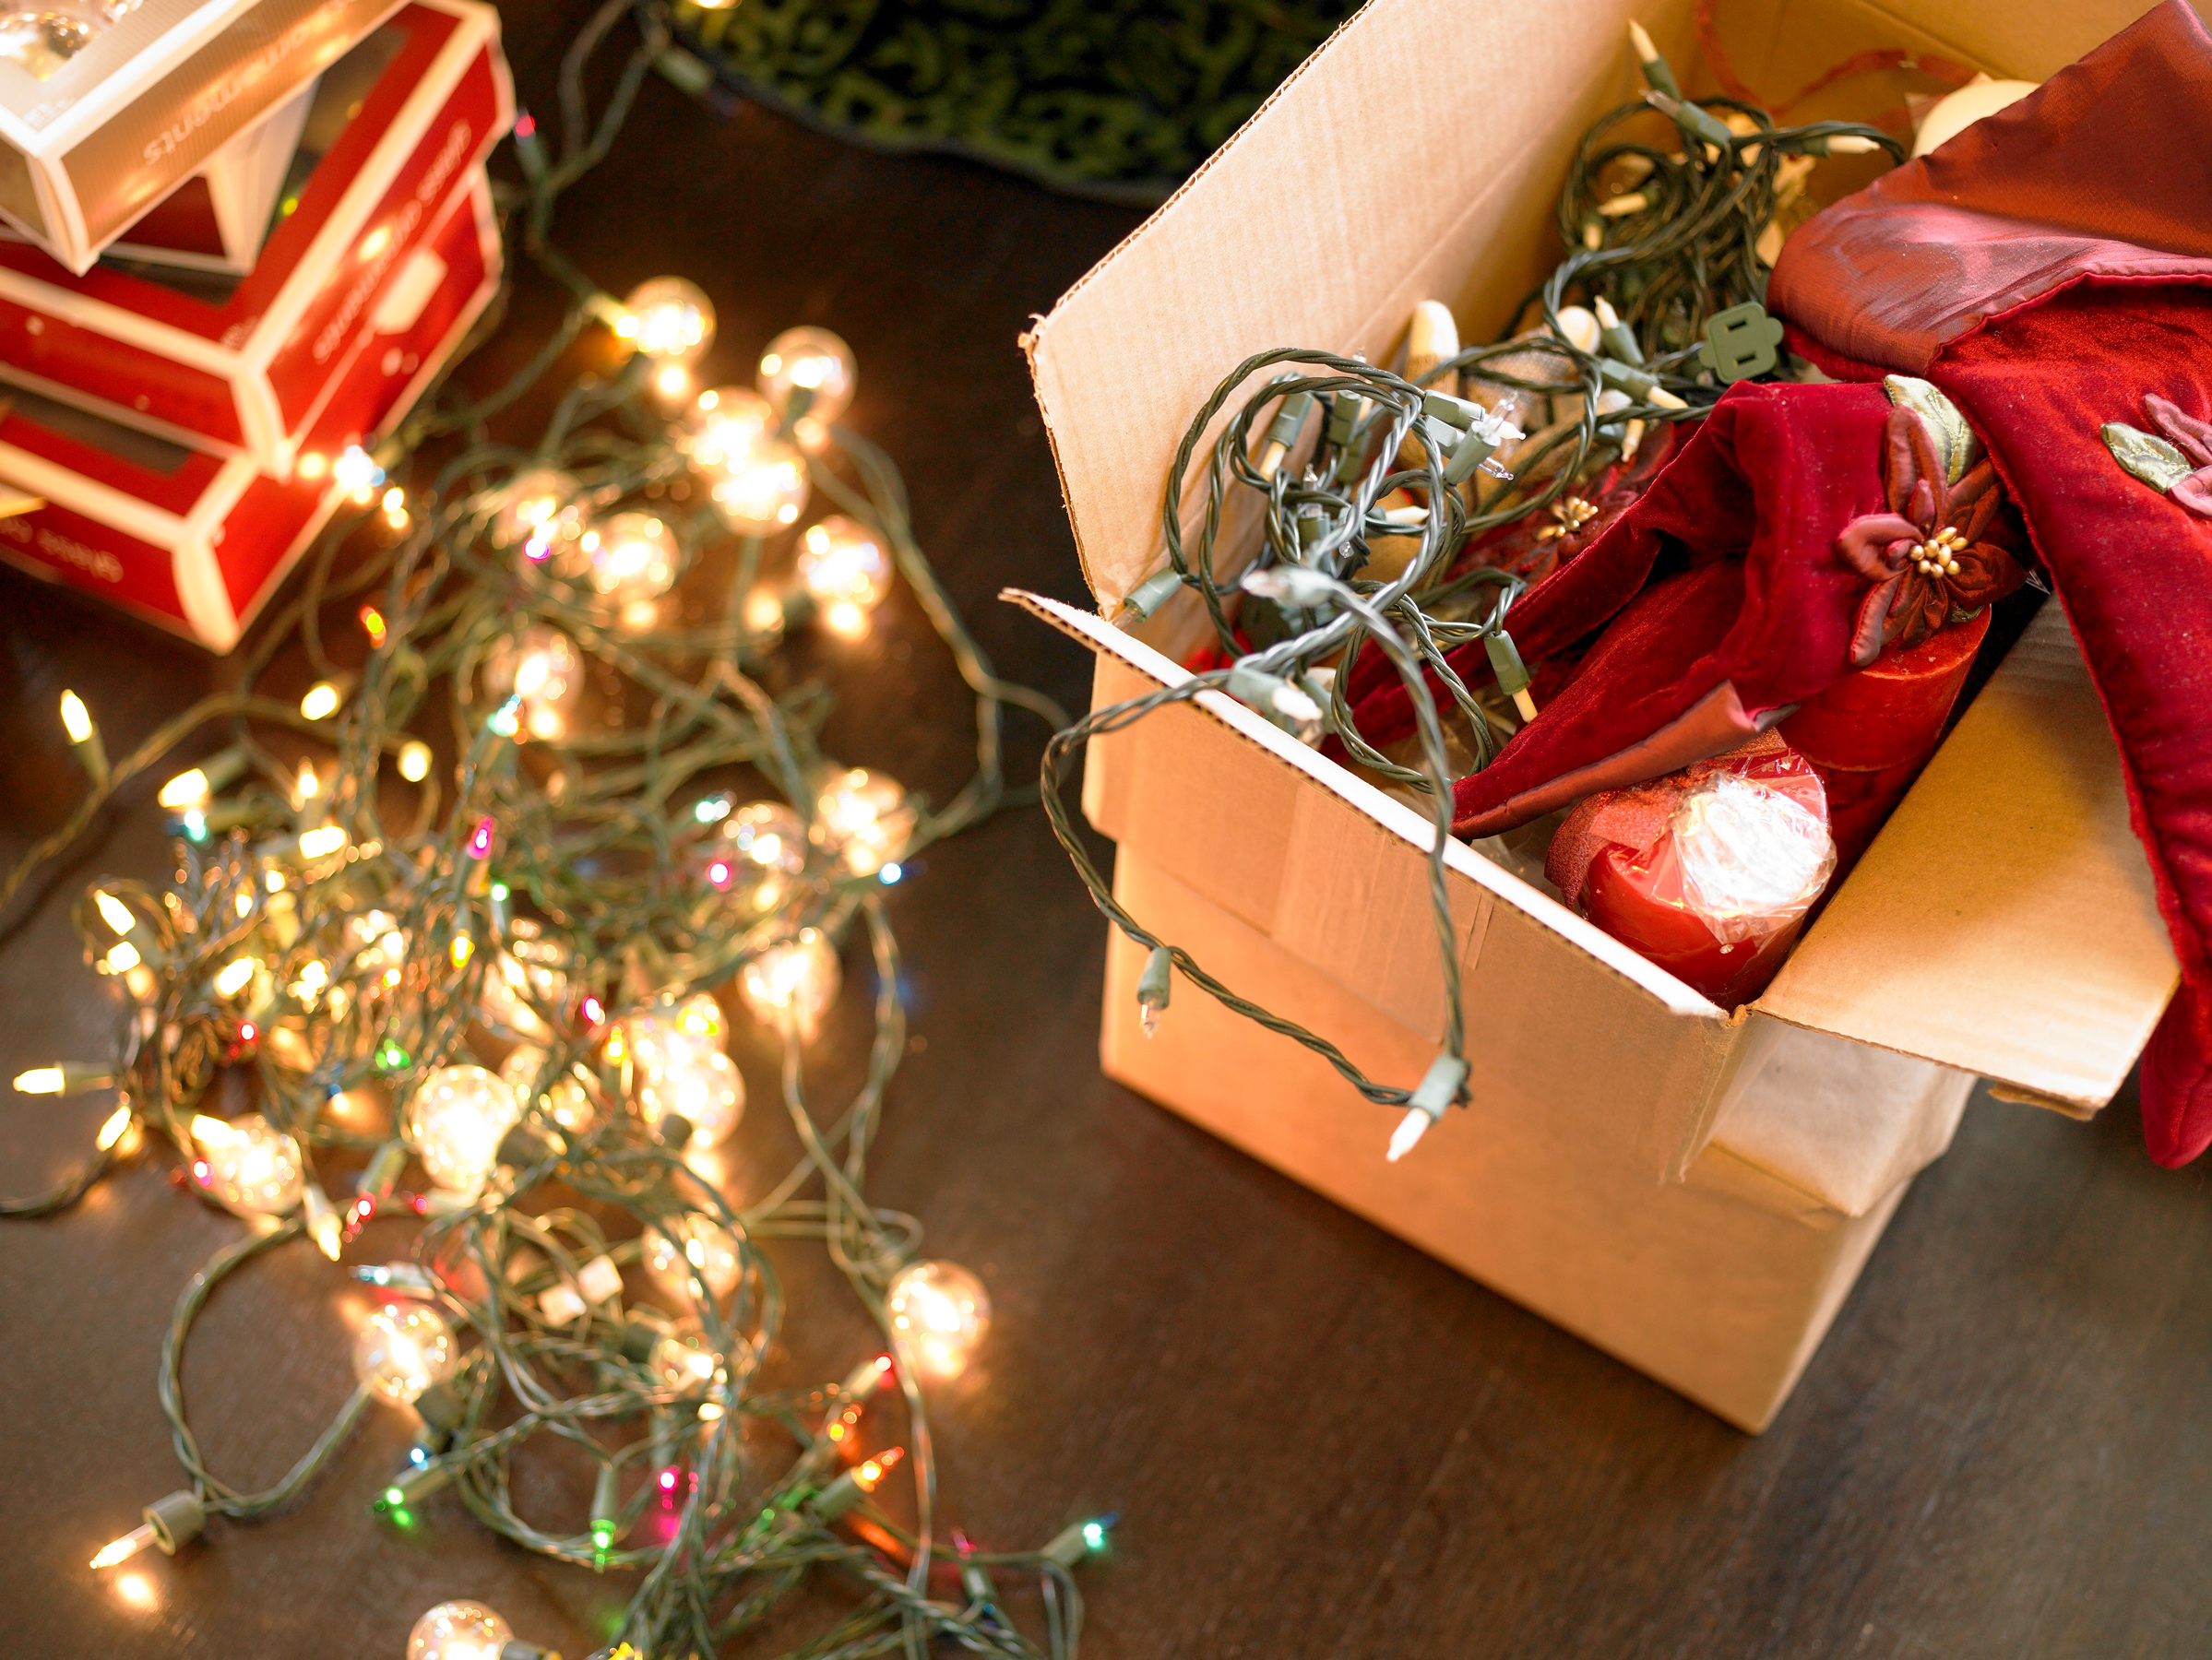 Ξεστολίζουμε: Έξυπνοι τρόποι για να αποθηκεύσεις τα χριστουγεννιάτικα σωστά